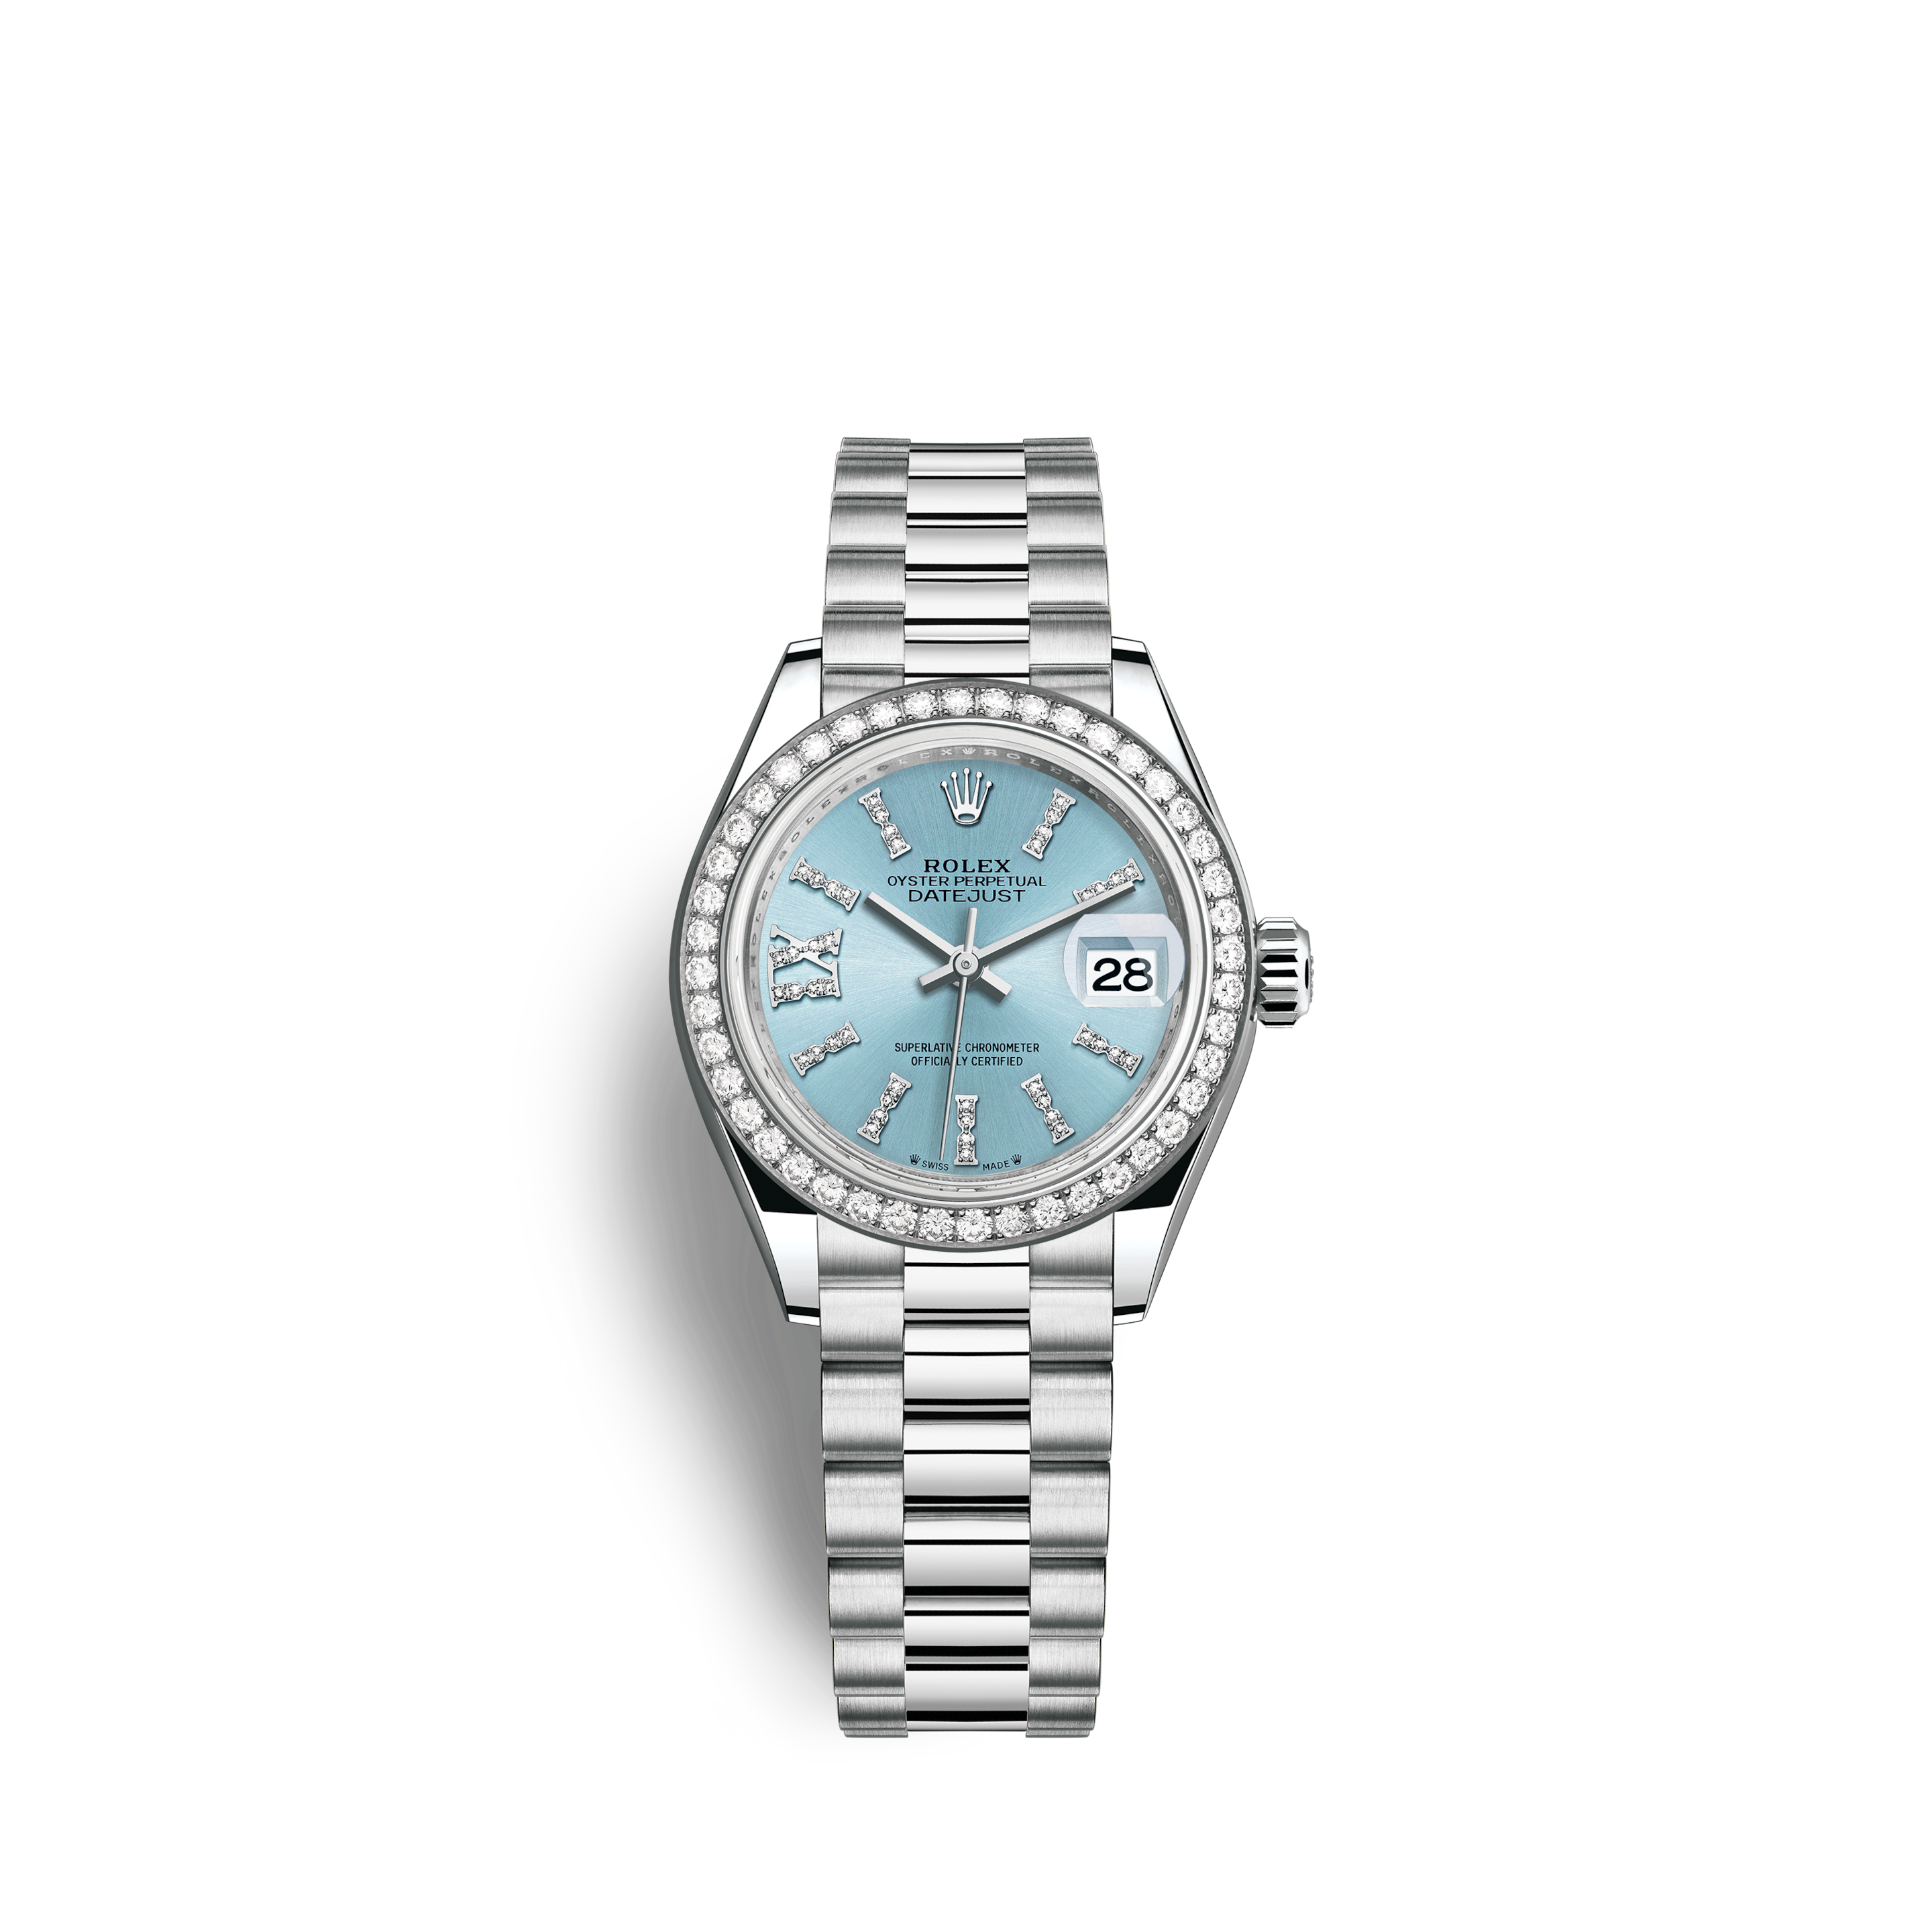 rolex women's platinum watch